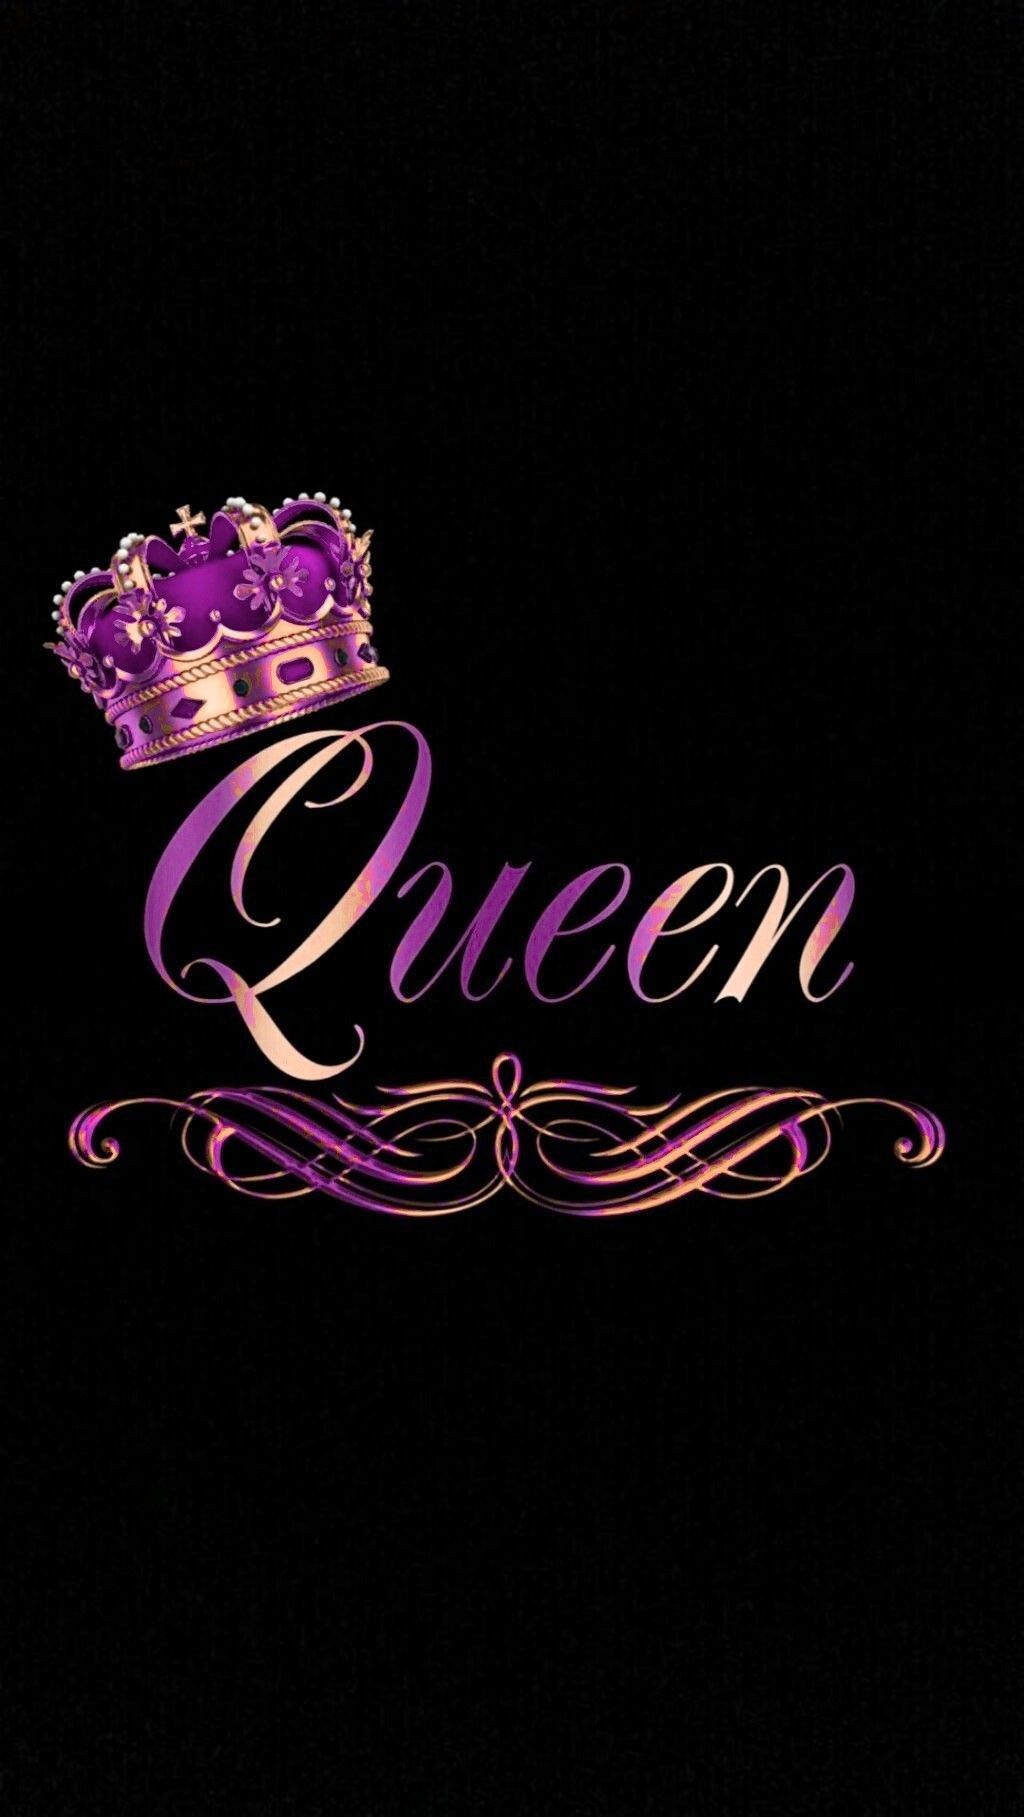 bunny wallpaper. Pink queen wallpaper, Queens wallpaper, Queen wallpaper crown